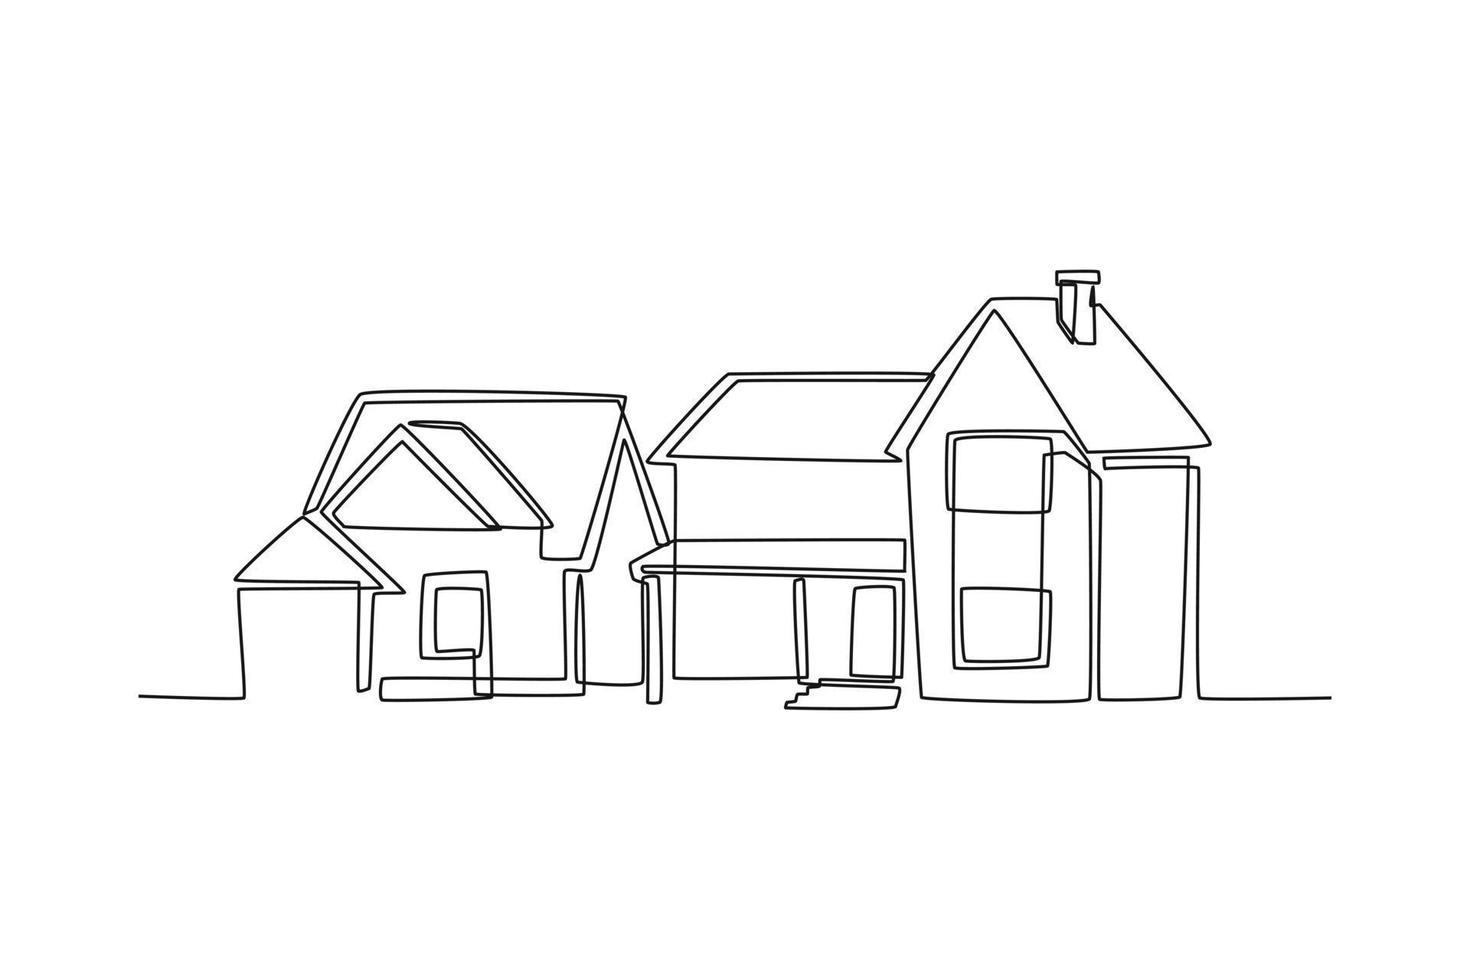 einzelne einzeilige zeichnung von wohngebäuden in einem vorort. Hausarchitektur-Immobilienkonzept. ununterbrochene Linie zeichnen grafische Vektorillustration des Designs. vektor